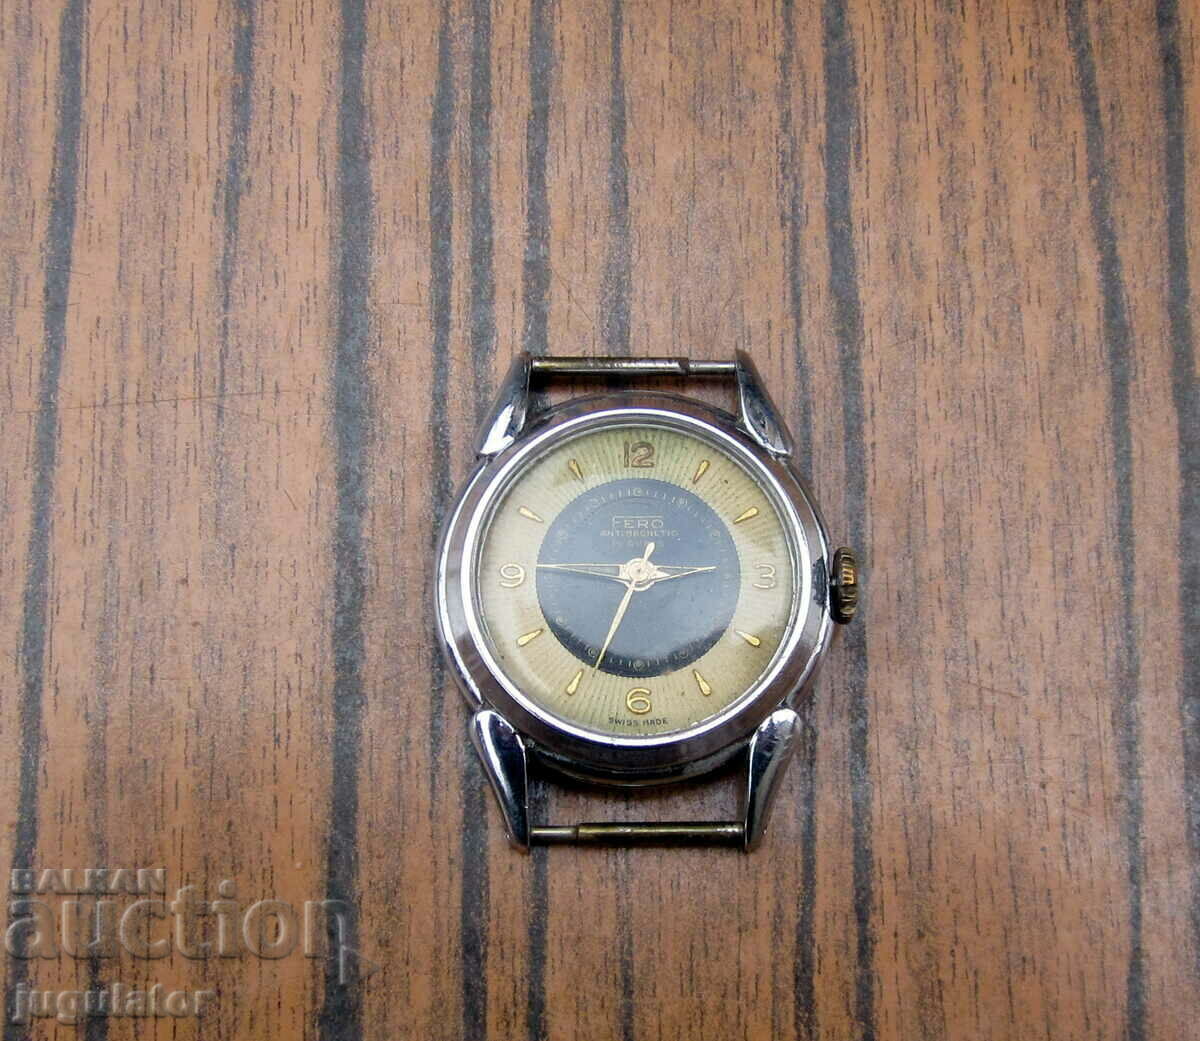 FERO WATCH old Swiss men's wristwatch